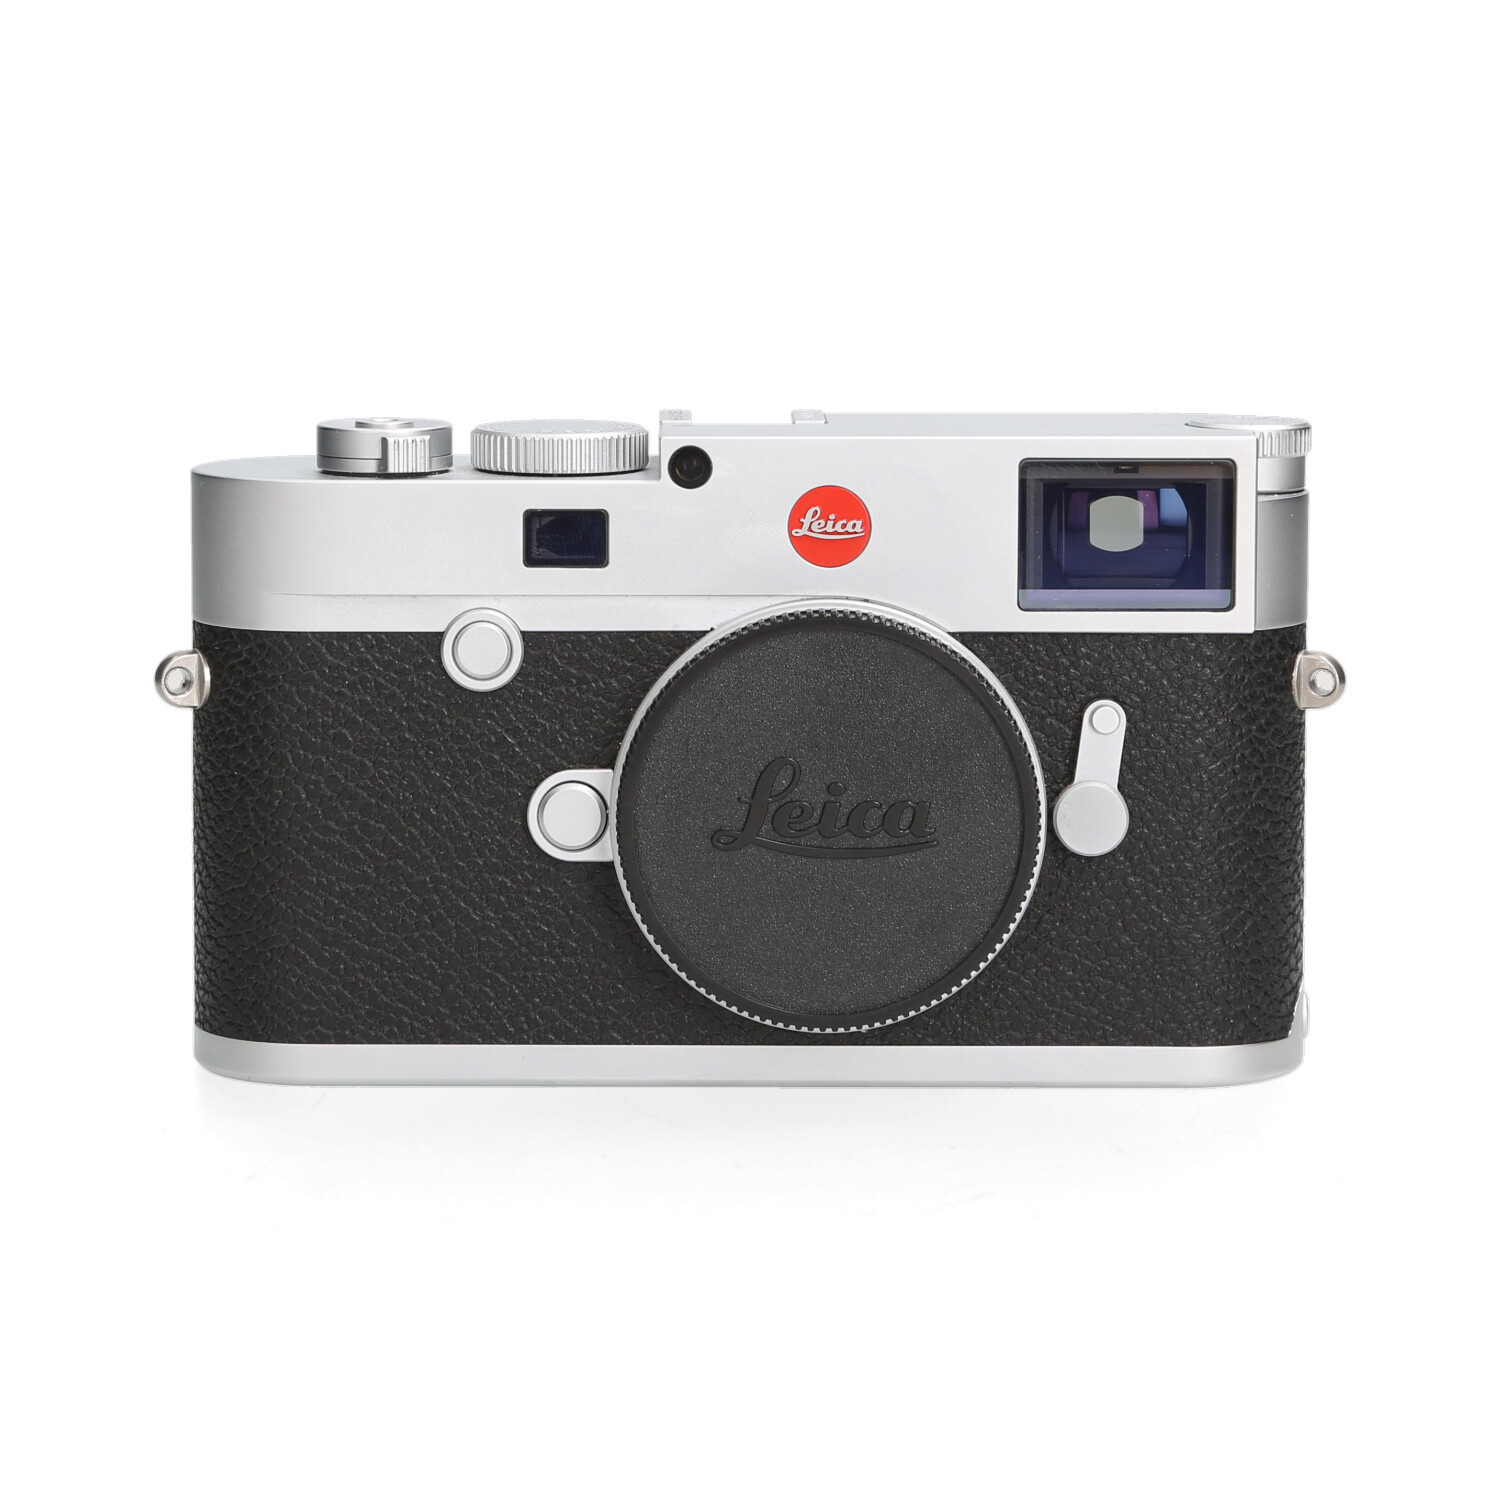 Leica Leica M10-r